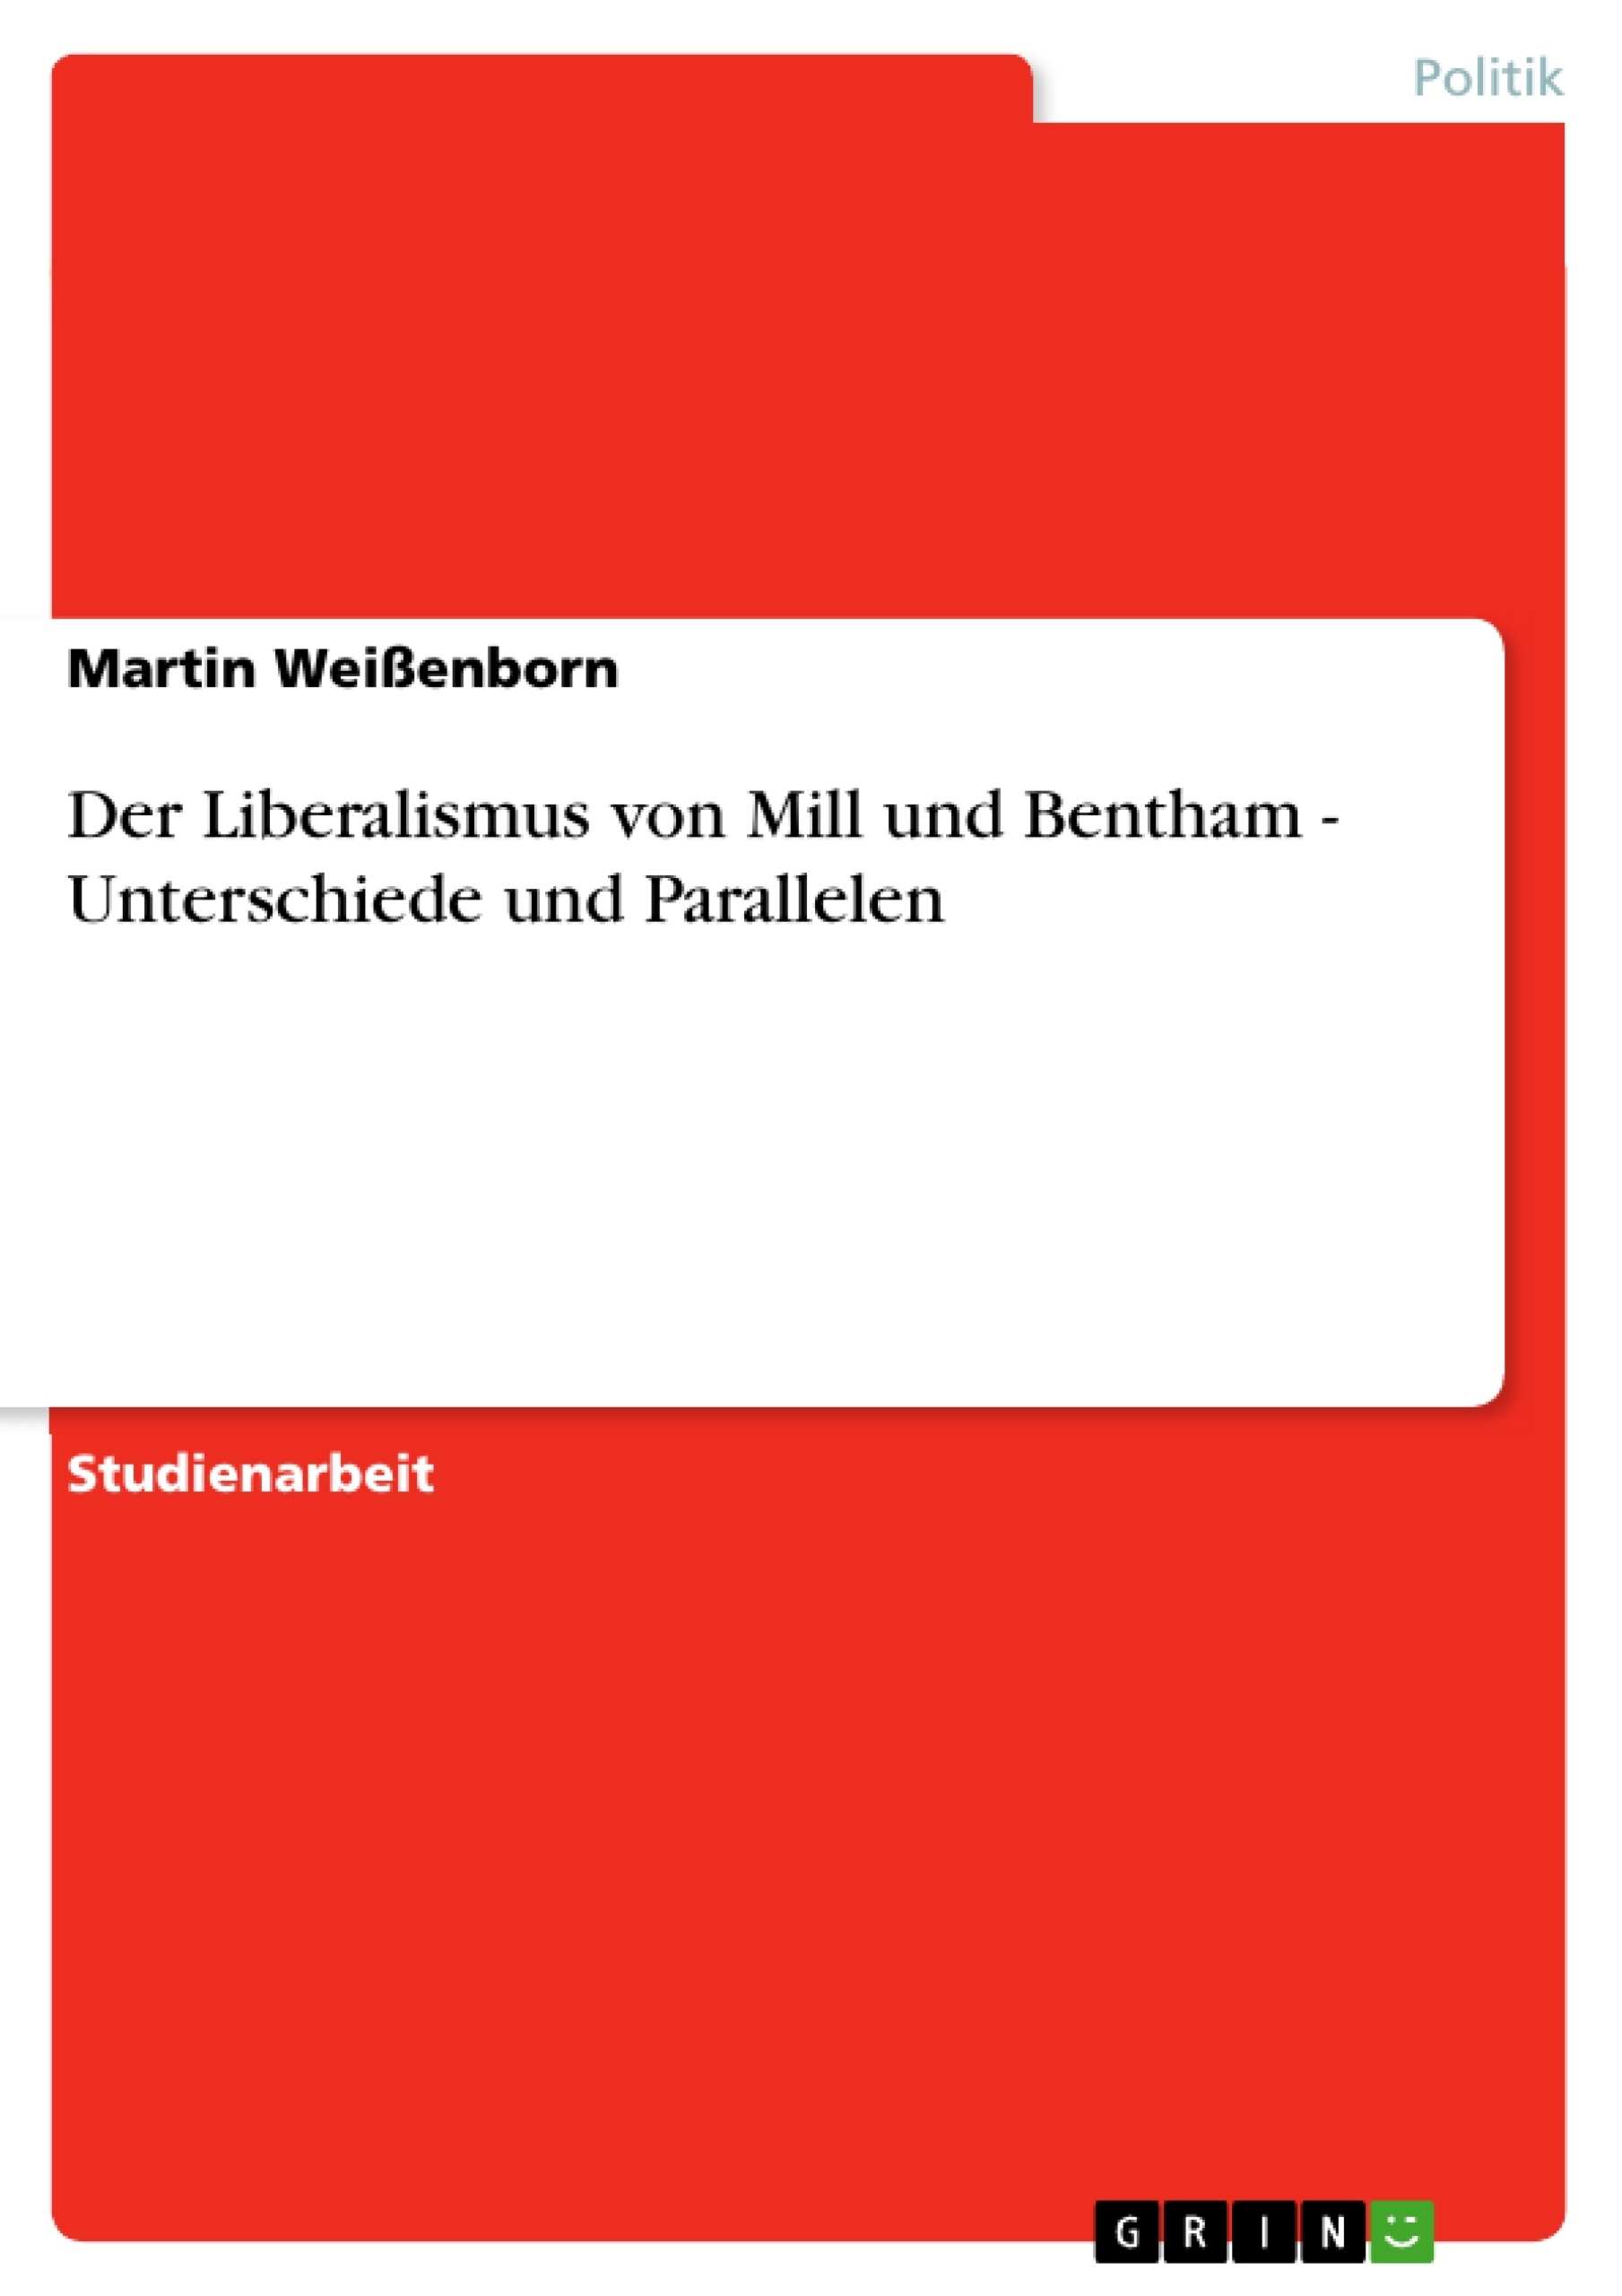 Title: Der Liberalismus von Mill und Bentham - Unterschiede und Parallelen